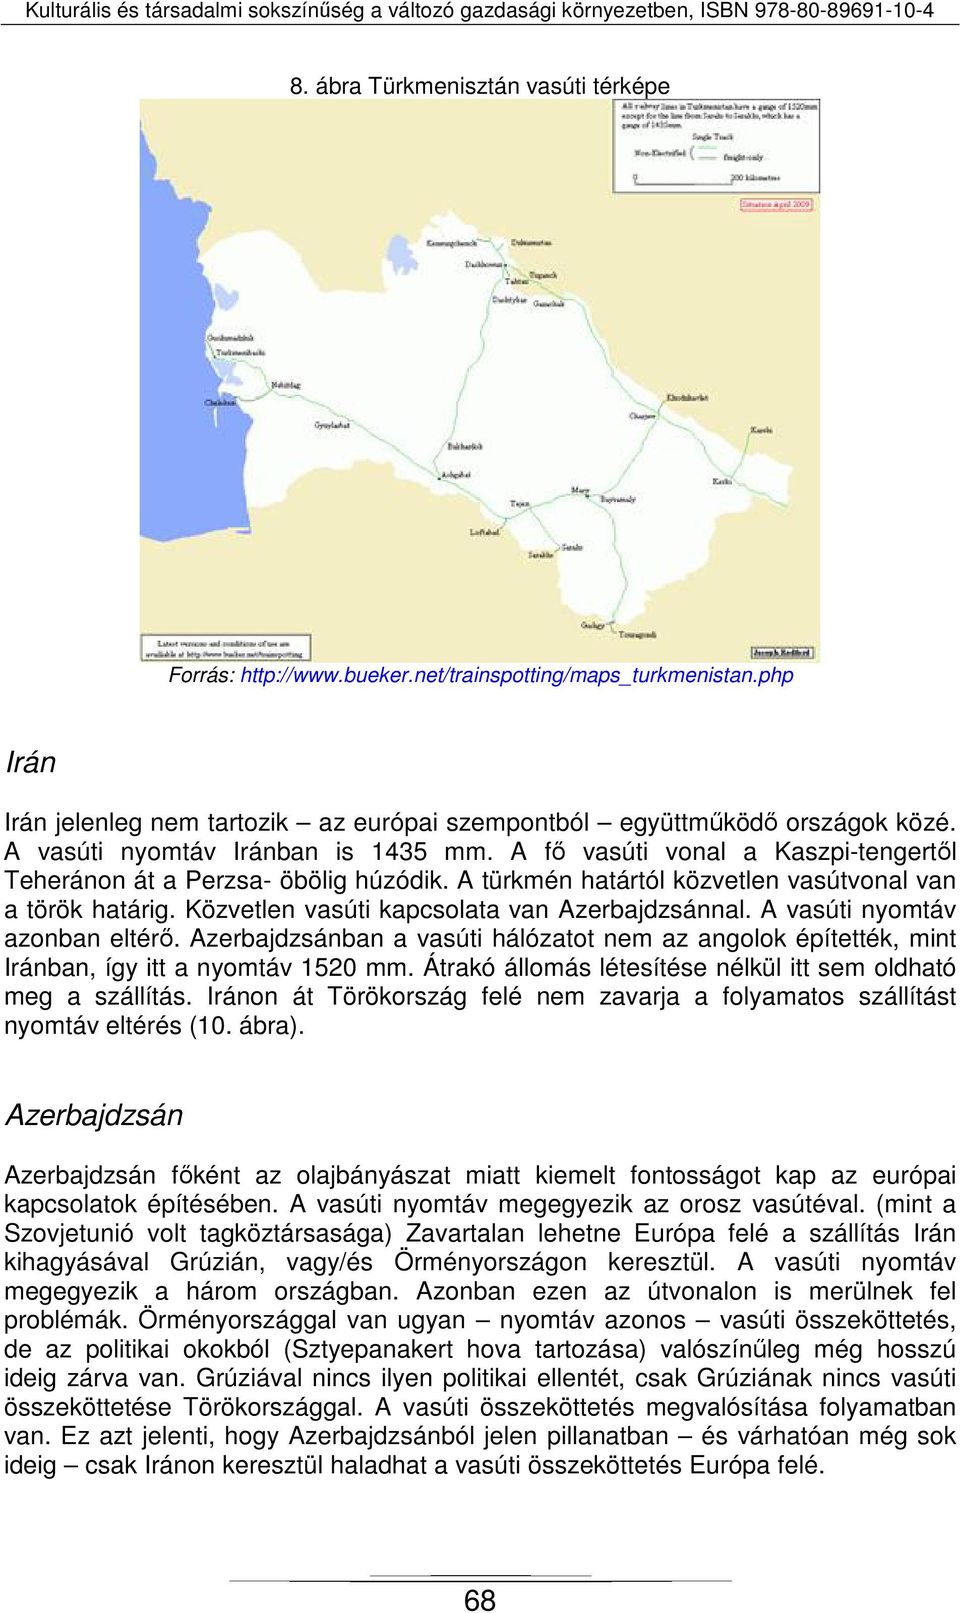 Közvetlen vasúti kapcsolata van Azerbajdzsánnal. A vasúti nyomtáv azonban eltérő. Azerbajdzsánban a vasúti hálózatot nem az angolok építették, mint Iránban, így itt a nyomtáv 1520 mm.